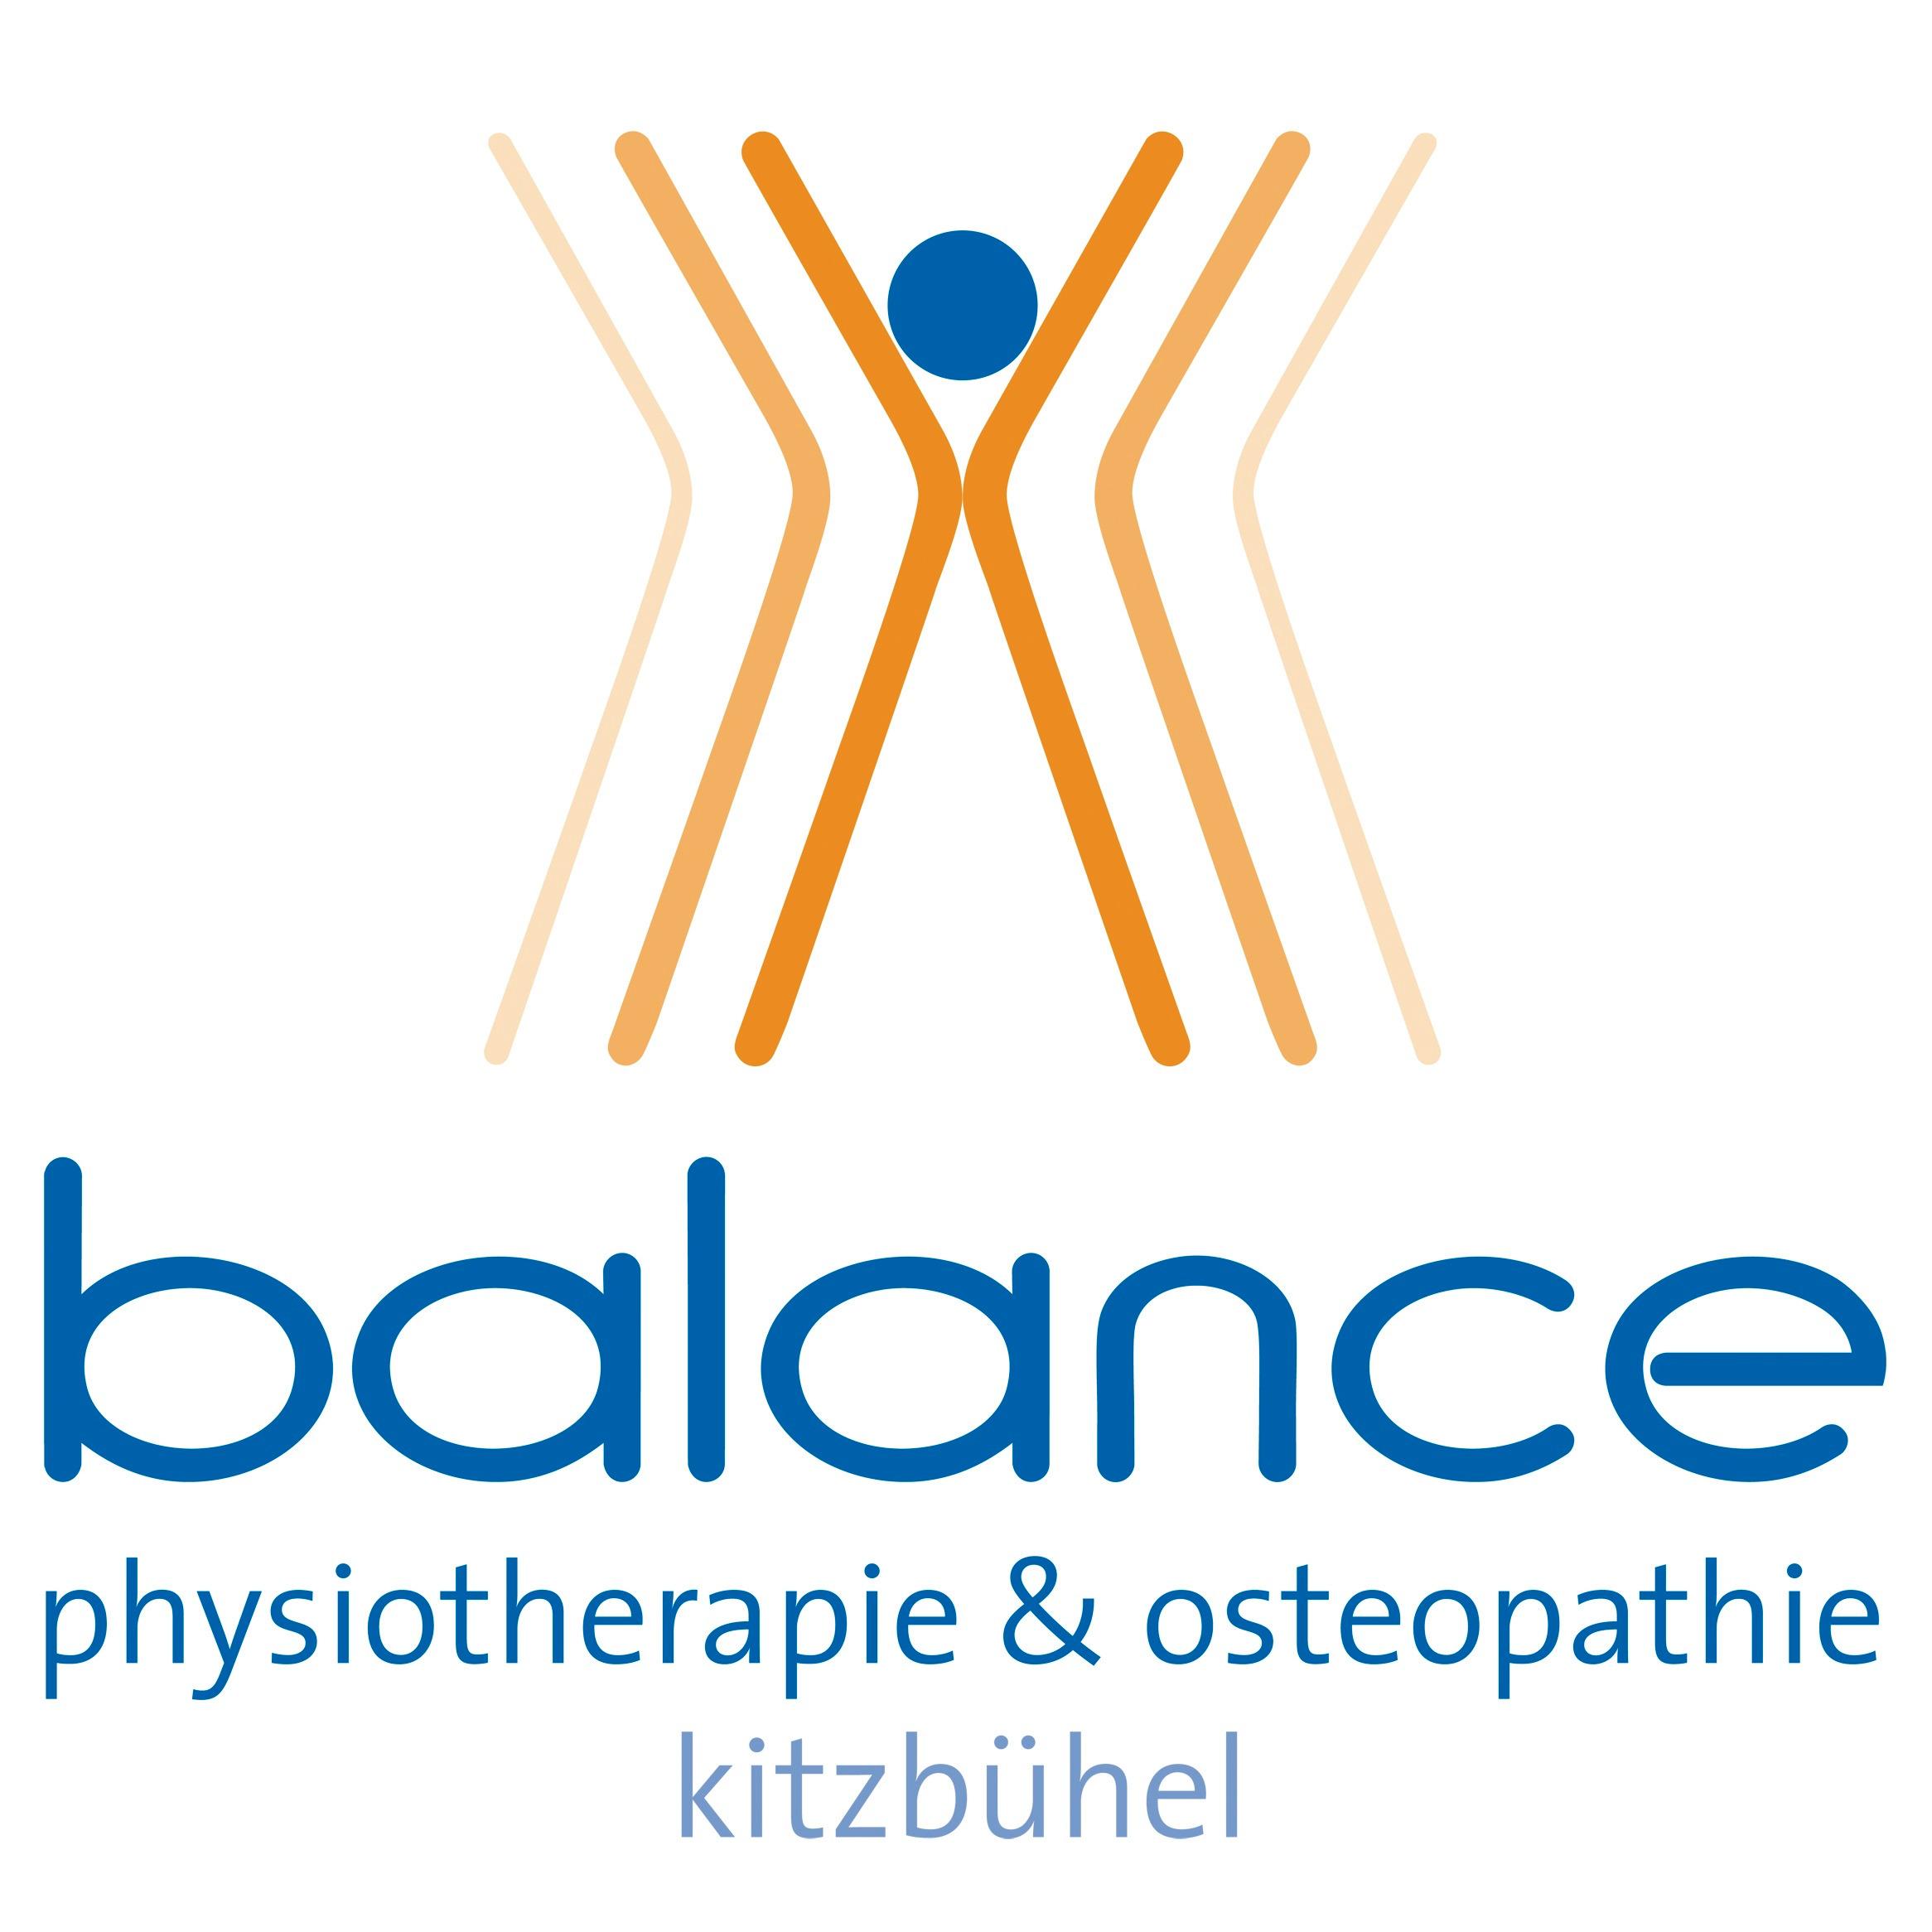 BALANCE - Physiotherapie u Osteopathie Logo